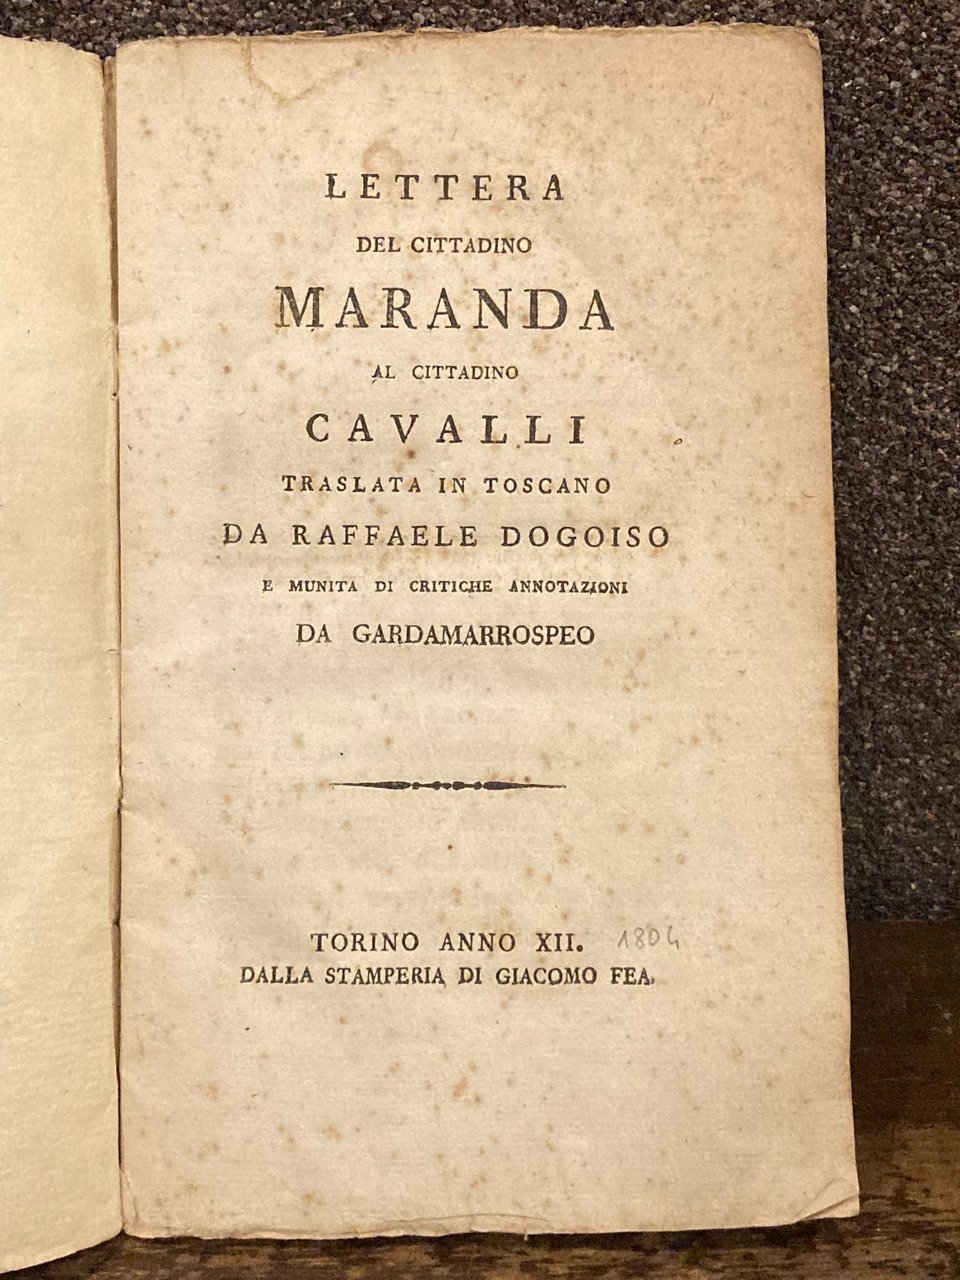 Lettera del Cittadino Maranda al Cittadino Cavalli traslata in toscano …